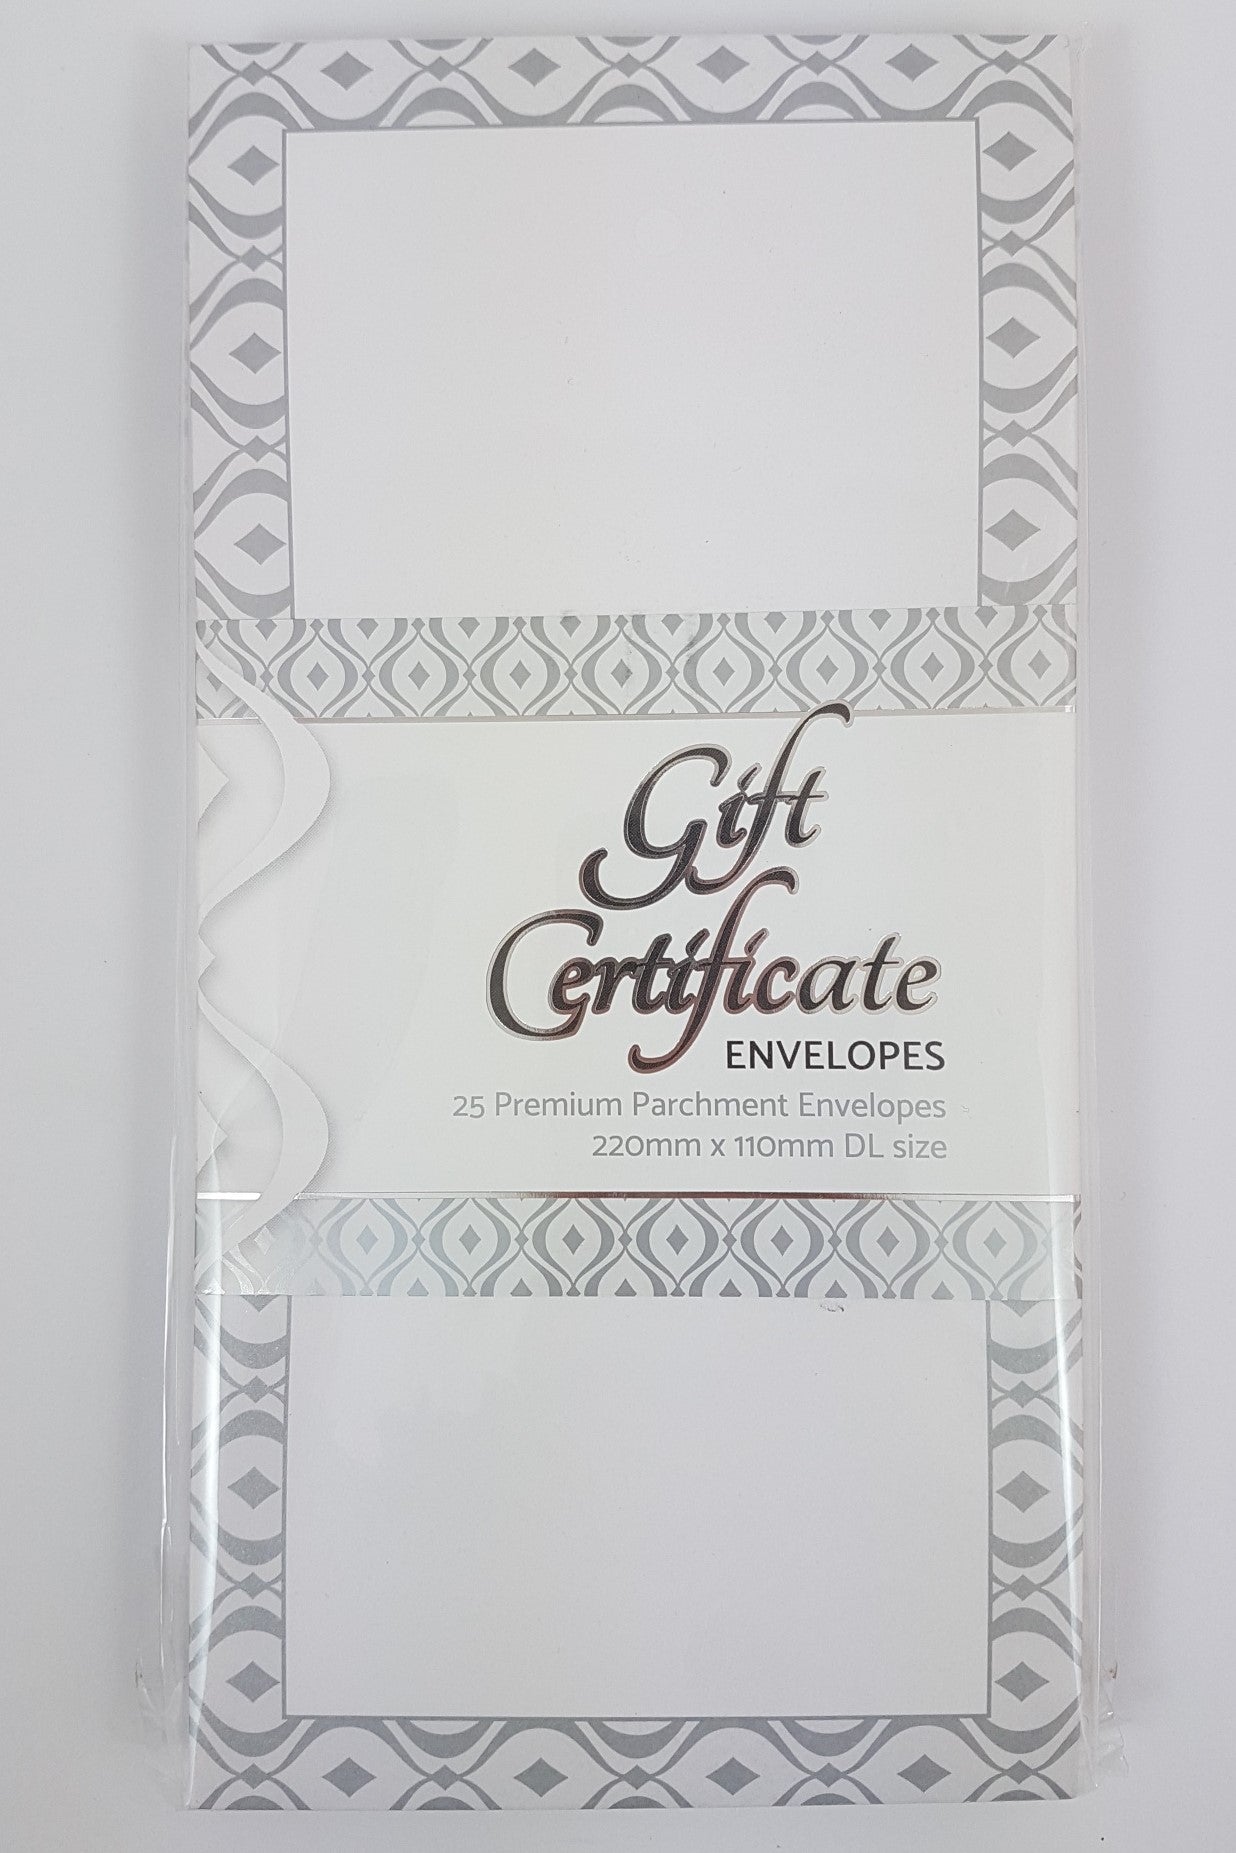 Envelope Pack for Gift Certificates